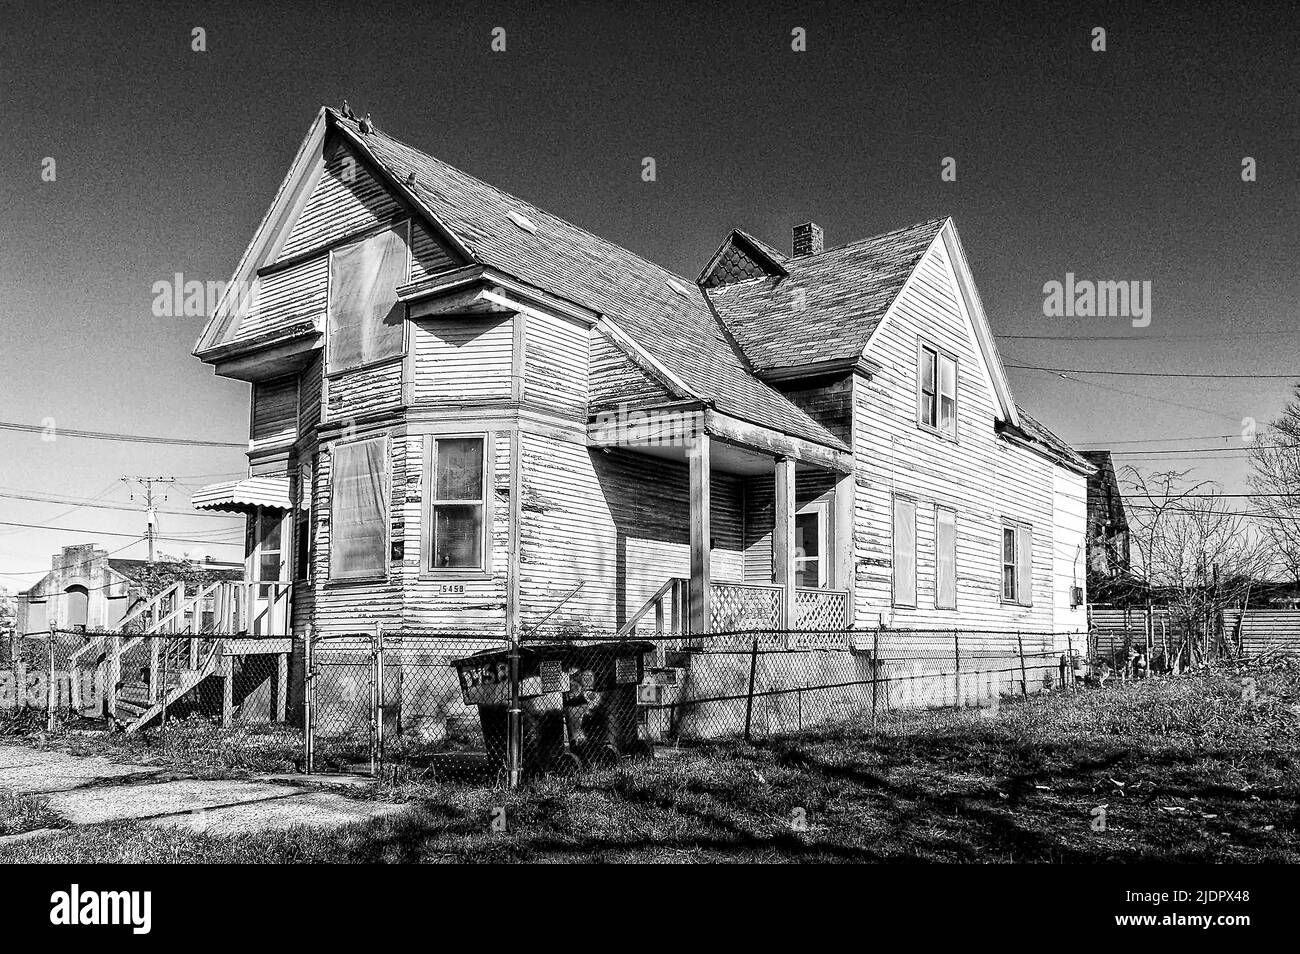 Ein altes verlassene Haus in Schwarz in Weiß geschossen, in einem von Verbrechen heimgesuchten Gebiet von Detroit, Michigan. Stockfoto